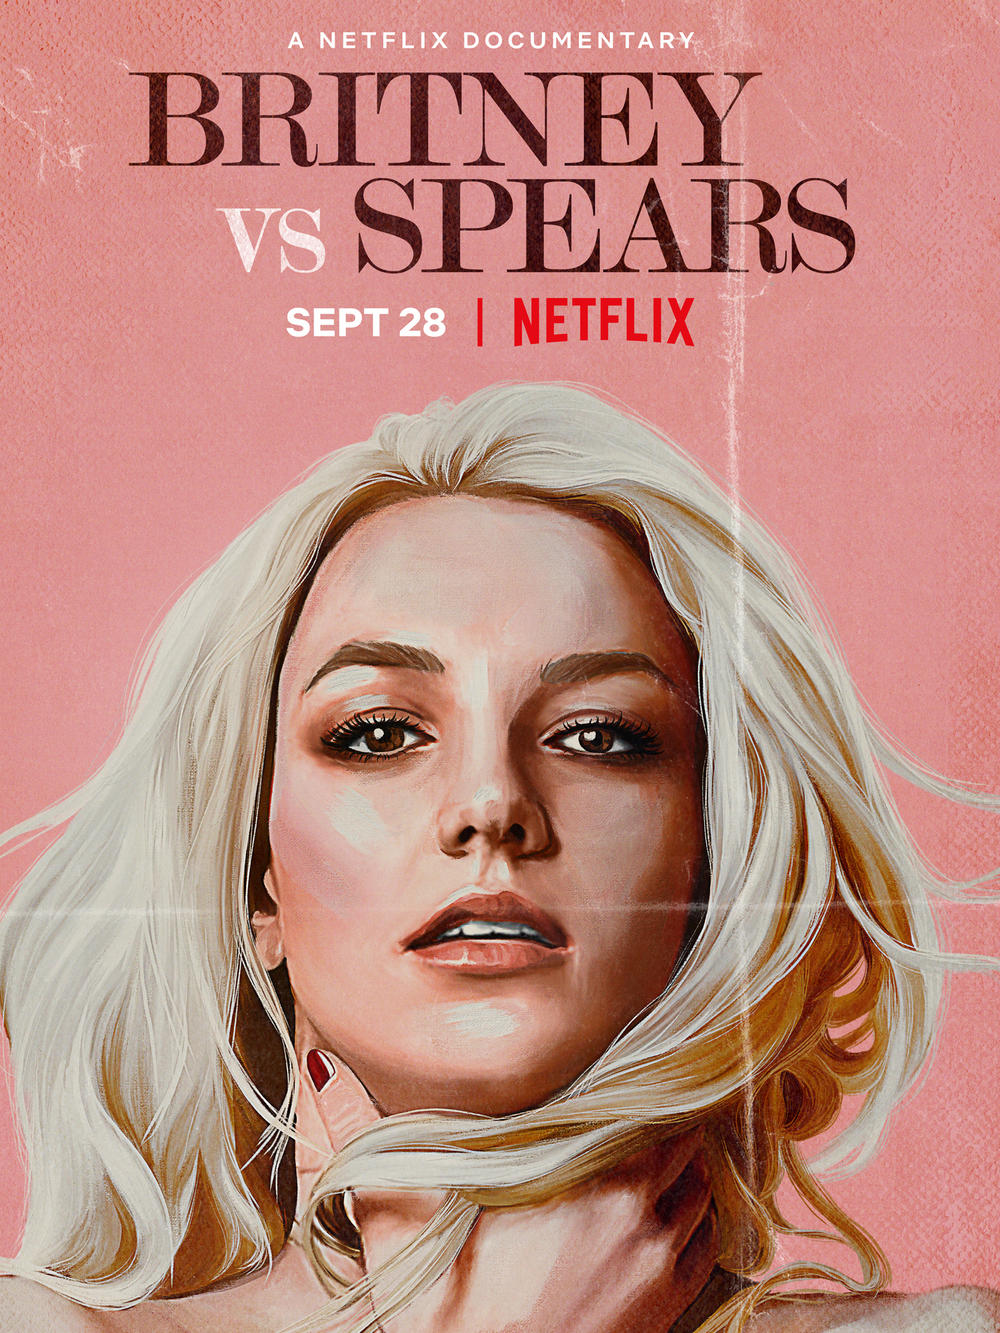 Cover art for the film <em>Britney vs Spears</em>.